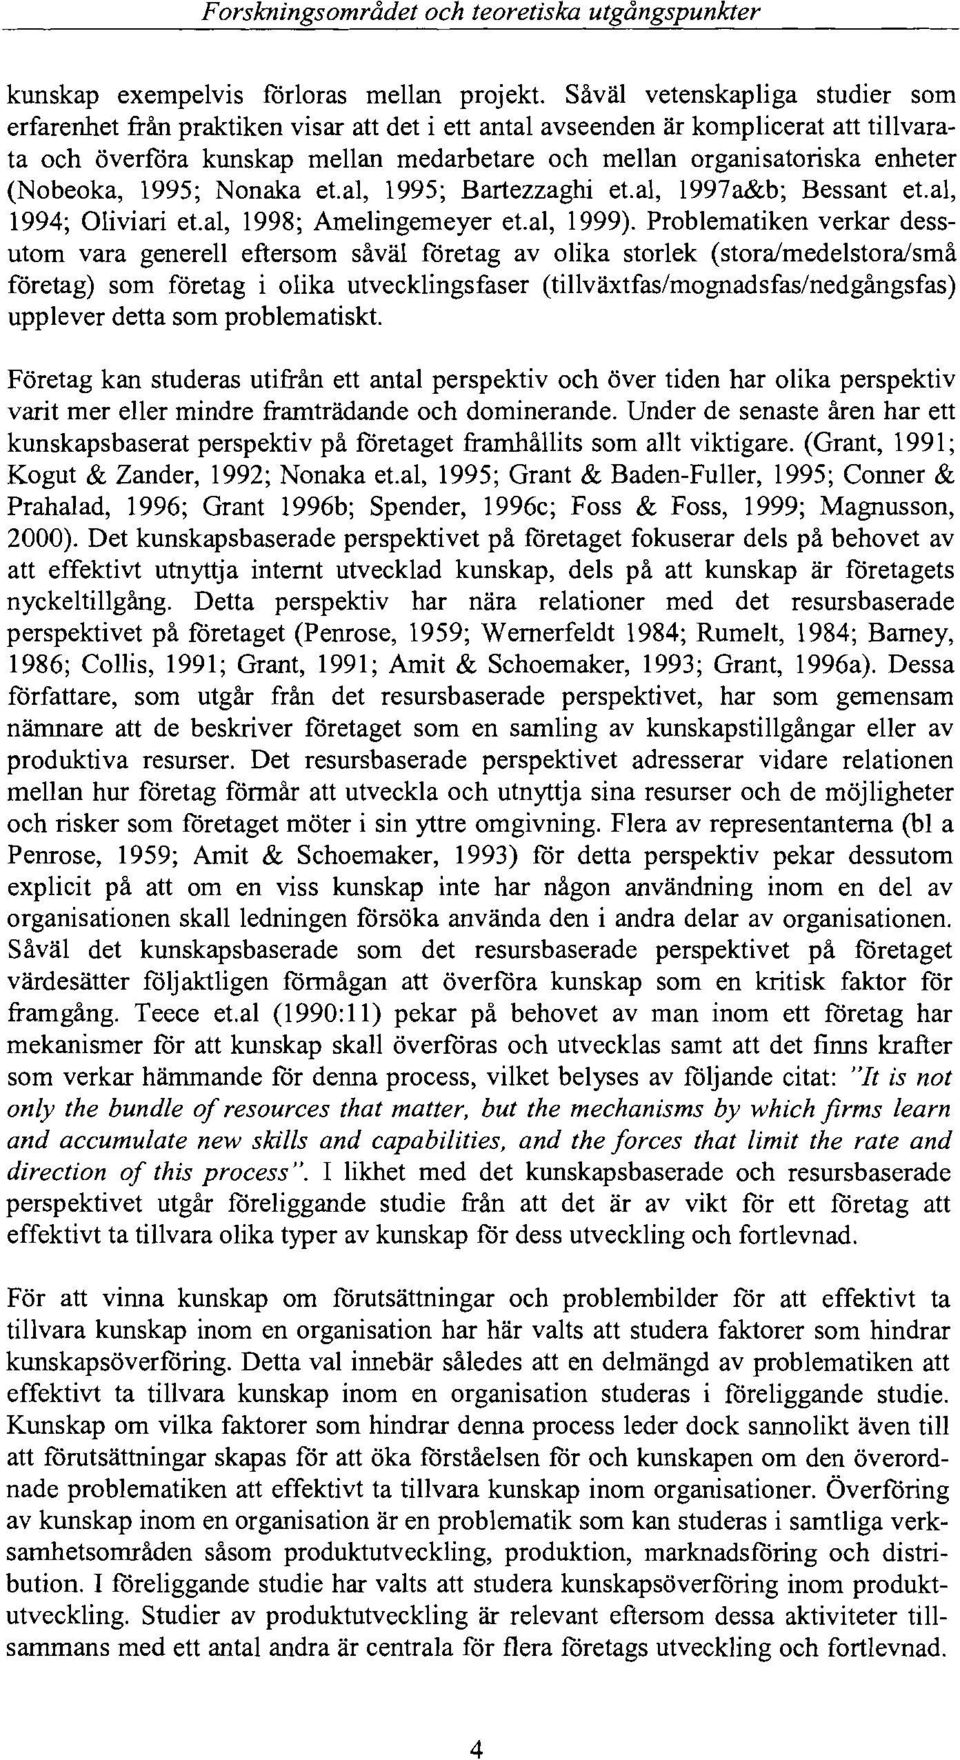 (Nobeoka, 1995; Nonaka et.al, 1995; Bartezzaghi et.al, 1997a&b; Bessant et. al, 1994; Oliviari et.al, 1998; Amelingemeyer et.al, 1999).